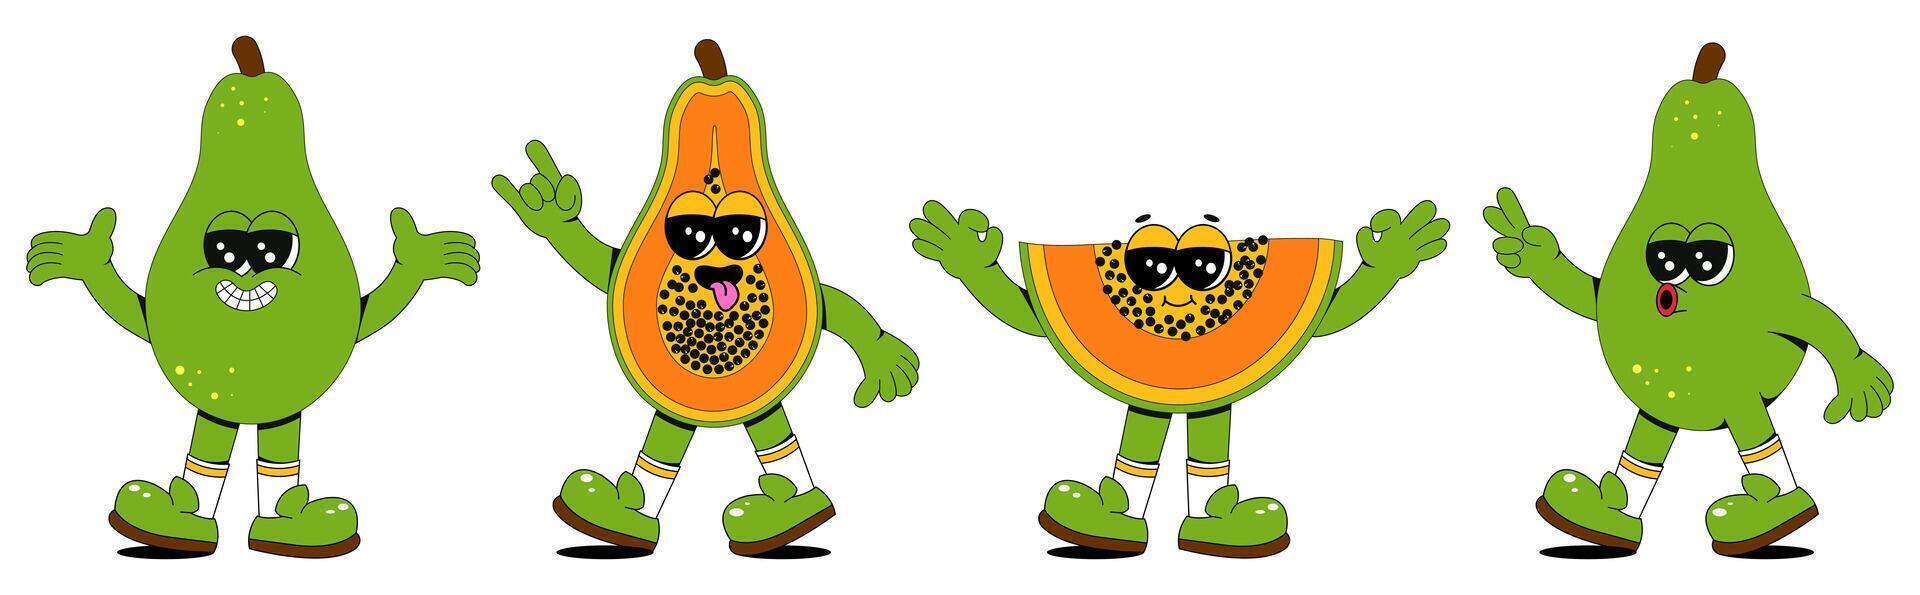 reeks van retro tekenfilm papaja karakters. een modern illustratie van schattig papaja mascottes in verschillend poses en emoties, creëren een jaren 70 grappig boek uitstraling. vector